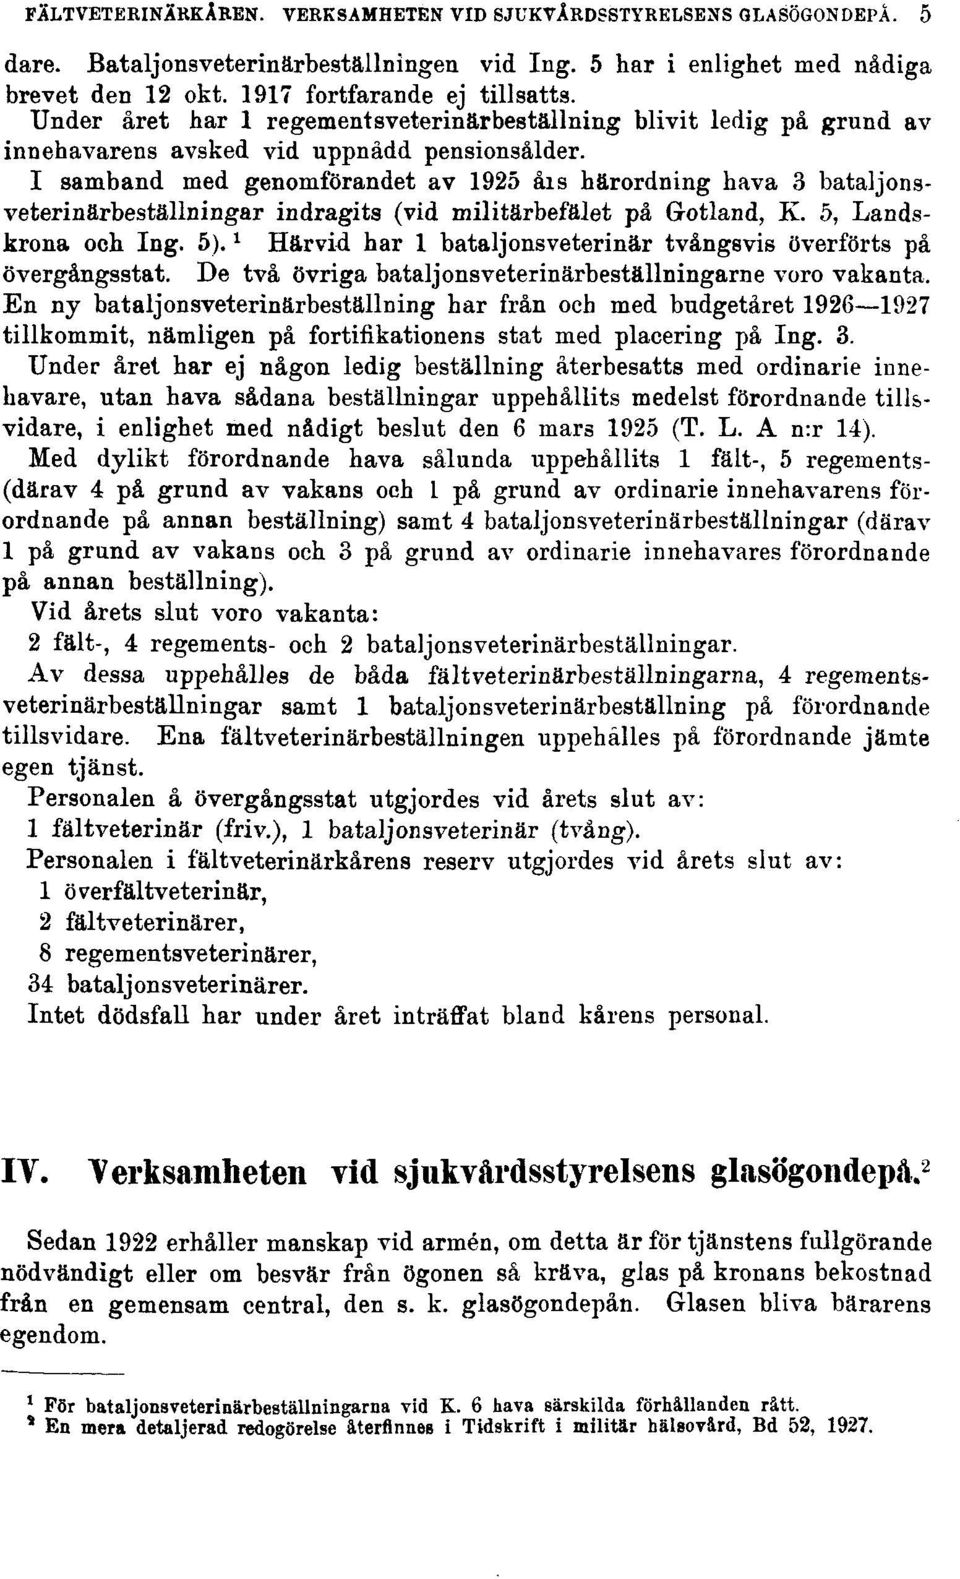 1 samband med genomförandet av 1925 åis härordning hava 3 bataljonsveterinärbeställningar indragits (vid militärbefälet på Gotland, K. 5, Landskrona och Ing. 5).